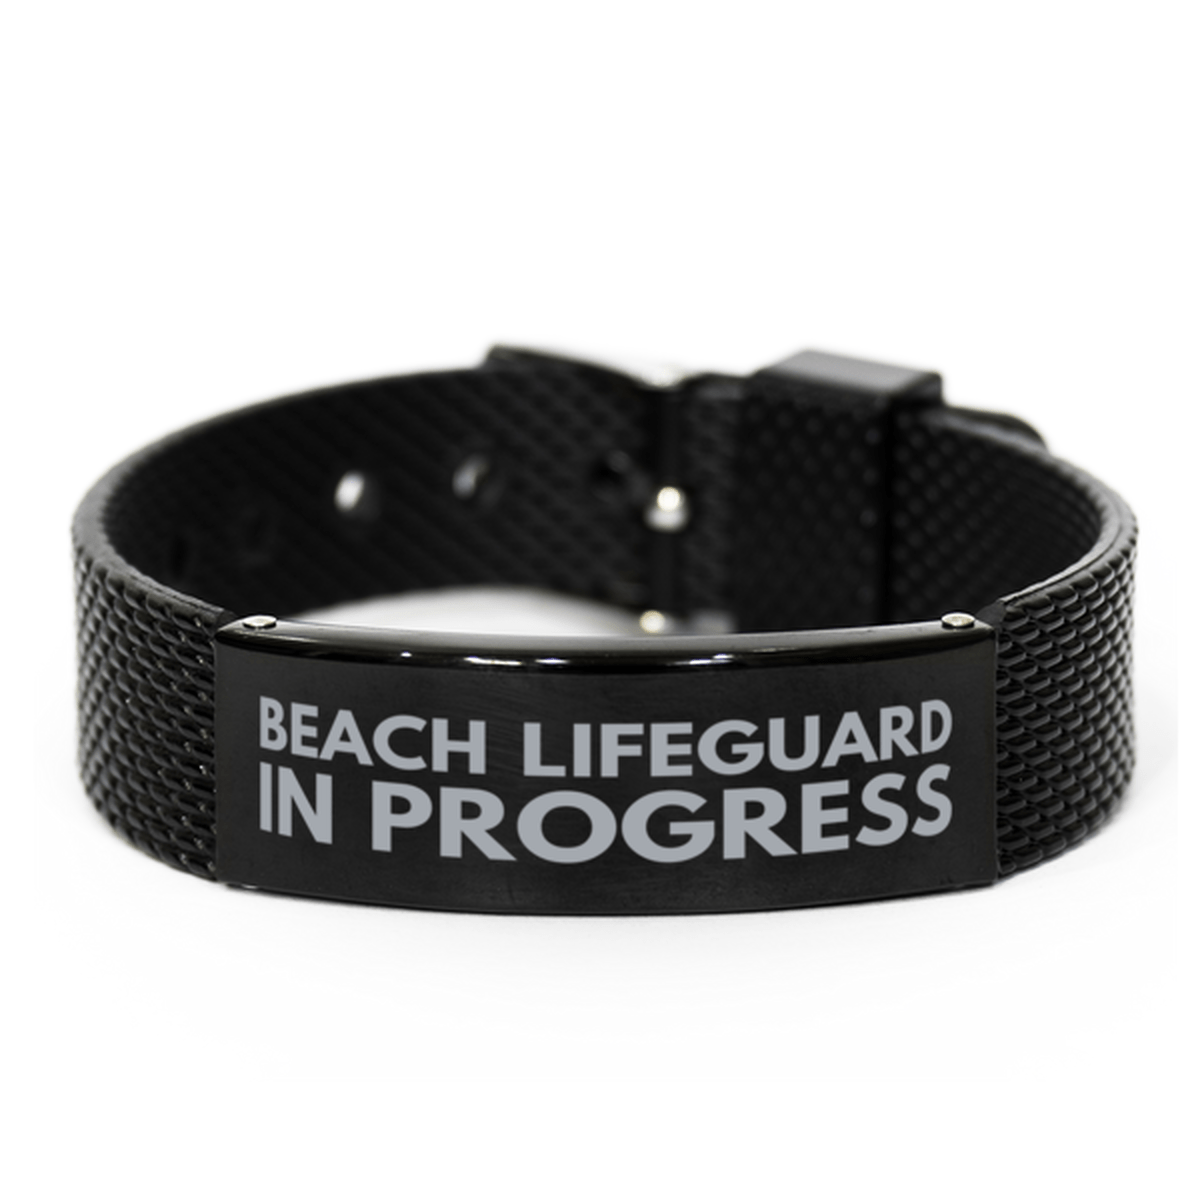 Inspirational Beach Lifeguard Black Shark Mesh Bracelet, Beach Lifeguard In Progress, Best Graduation Gifts for Students